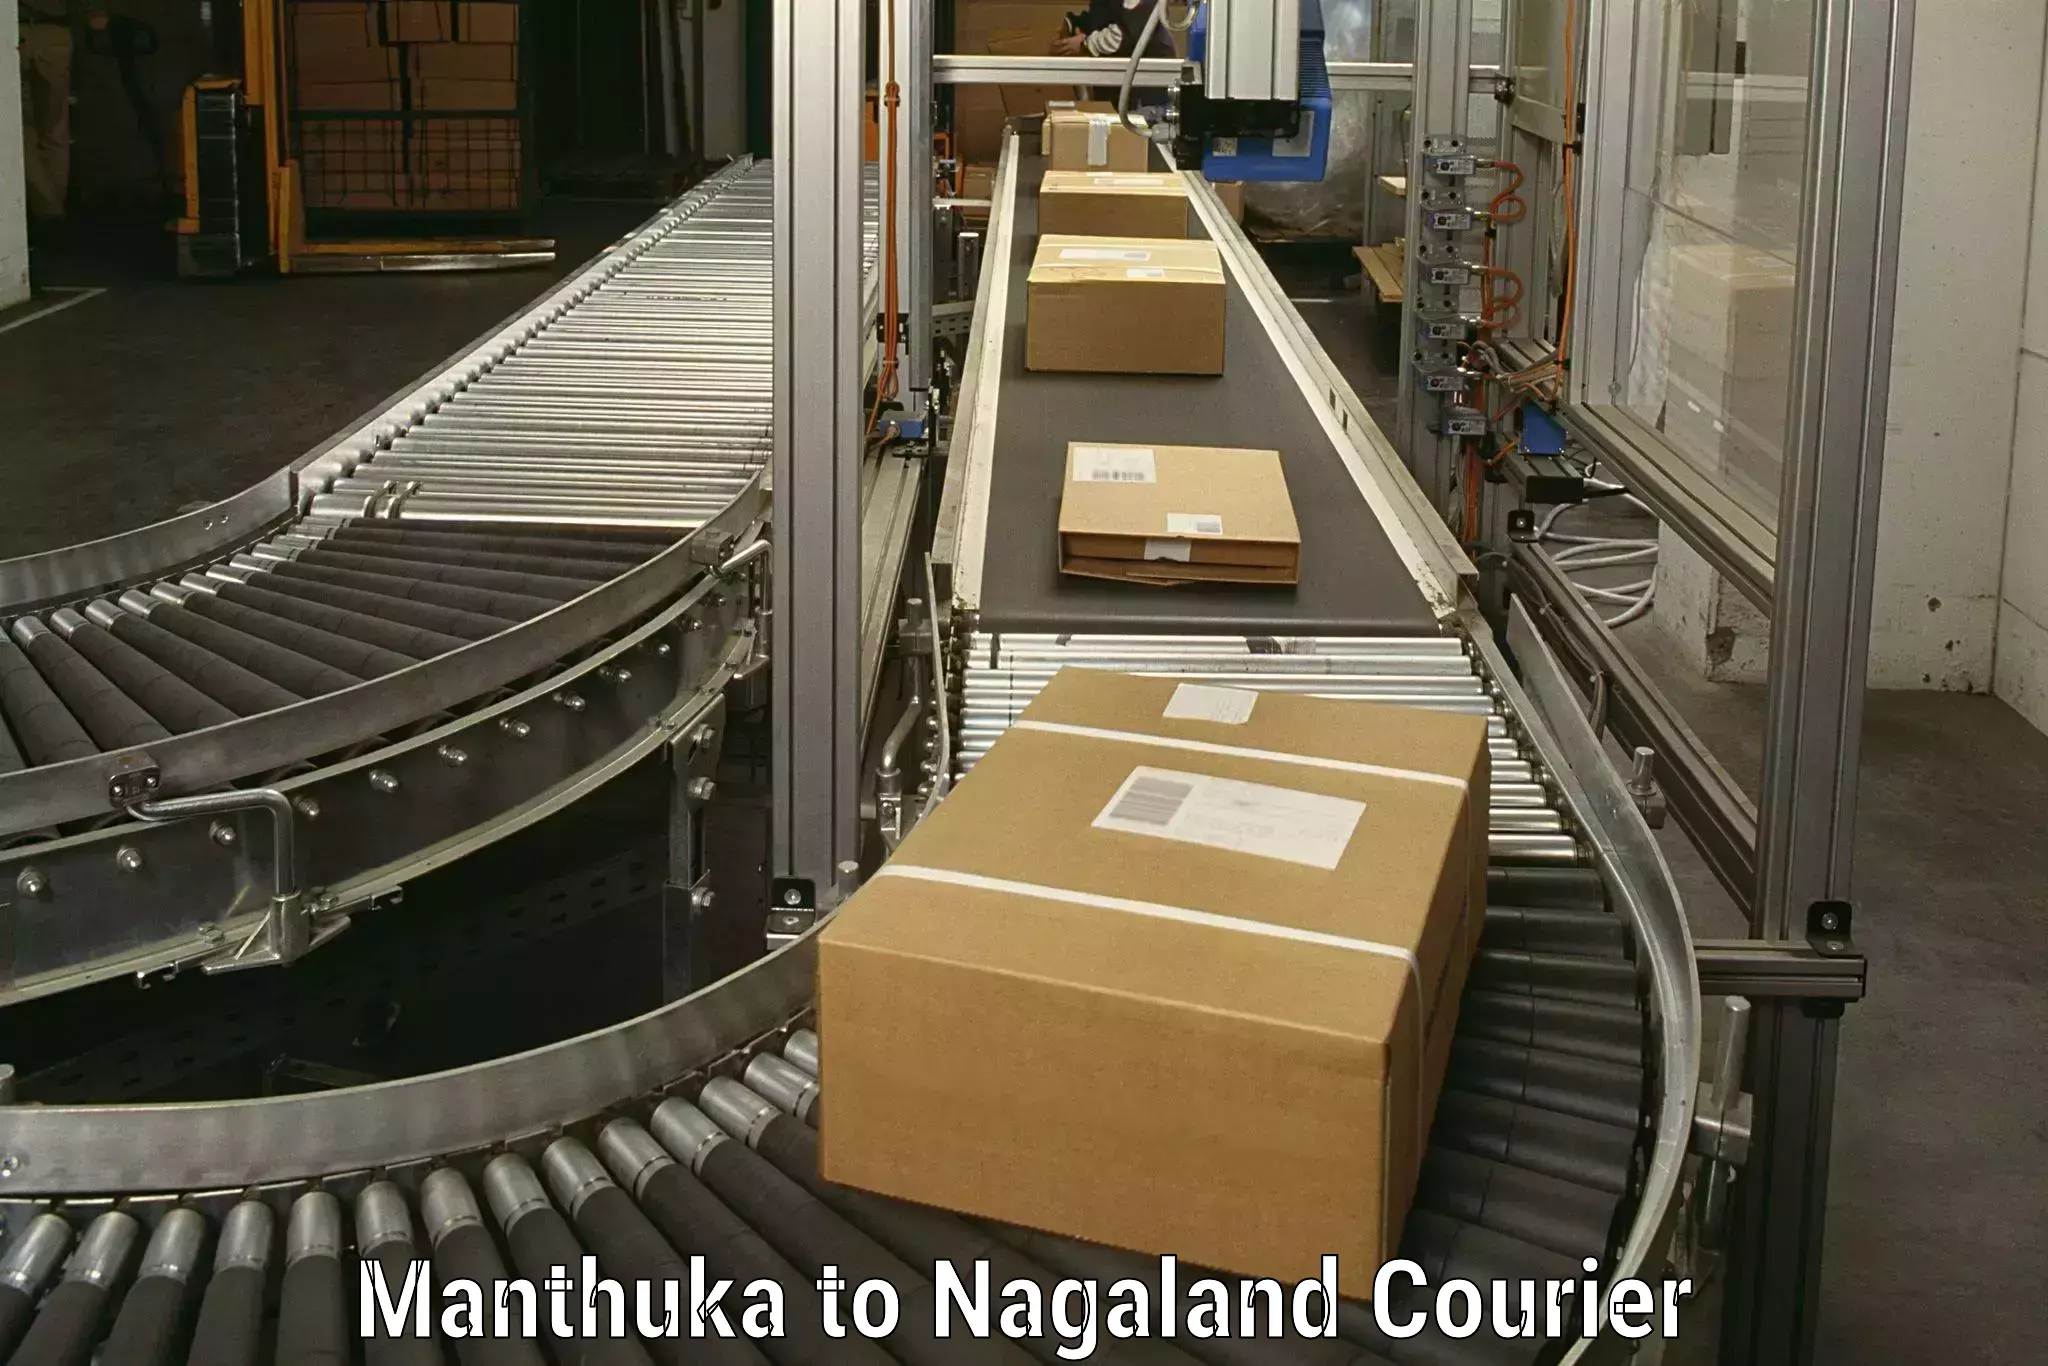 Moving and handling services Manthuka to Nagaland